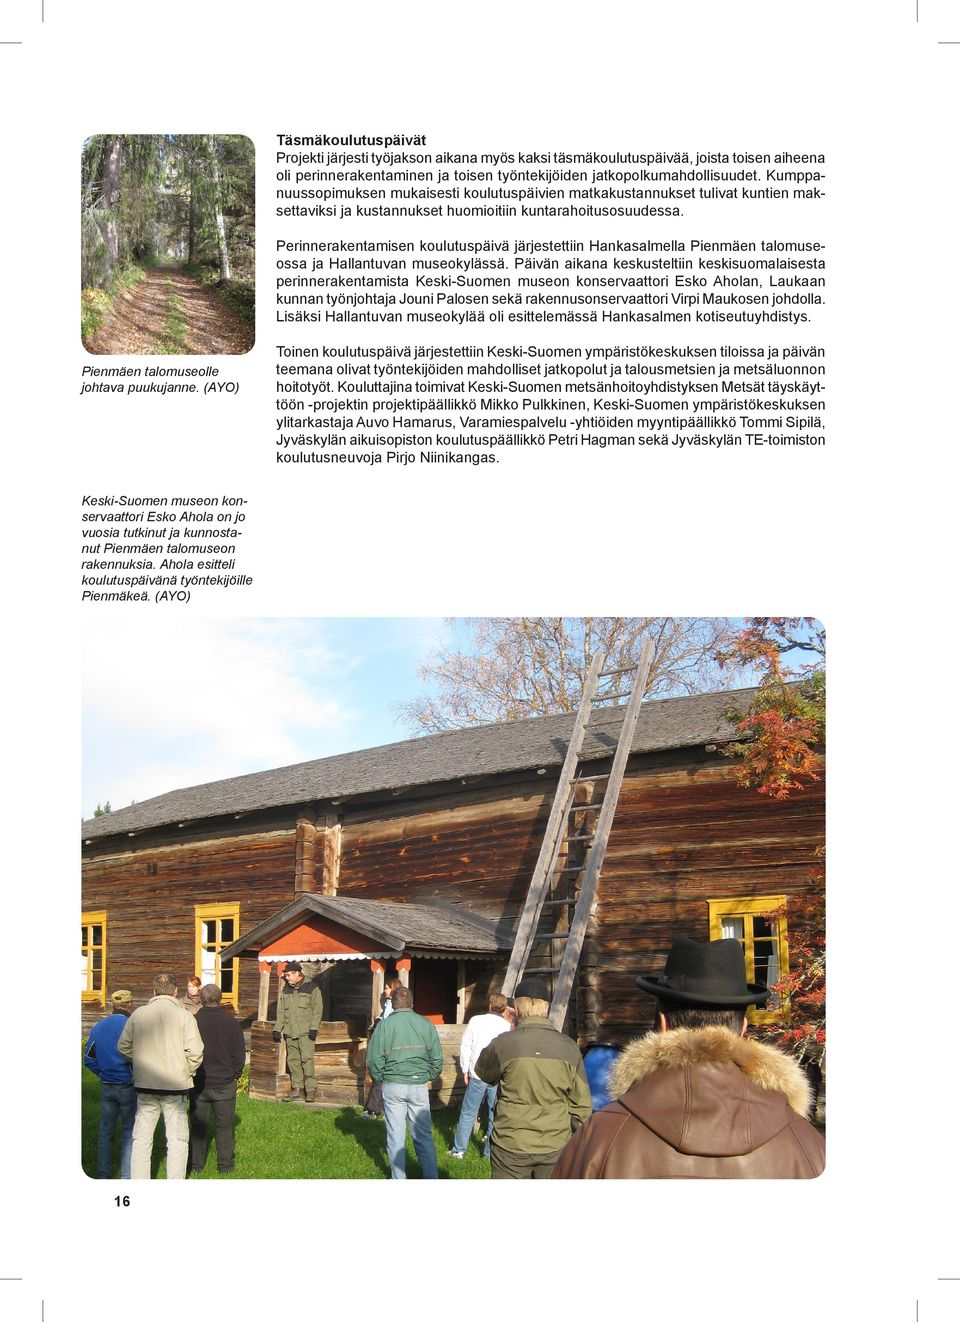 Perinnerakentamisen koulutuspäivä järjestettiin Hankasalmella Pienmäen talomuseossa ja Hallantuvan museokylässä.